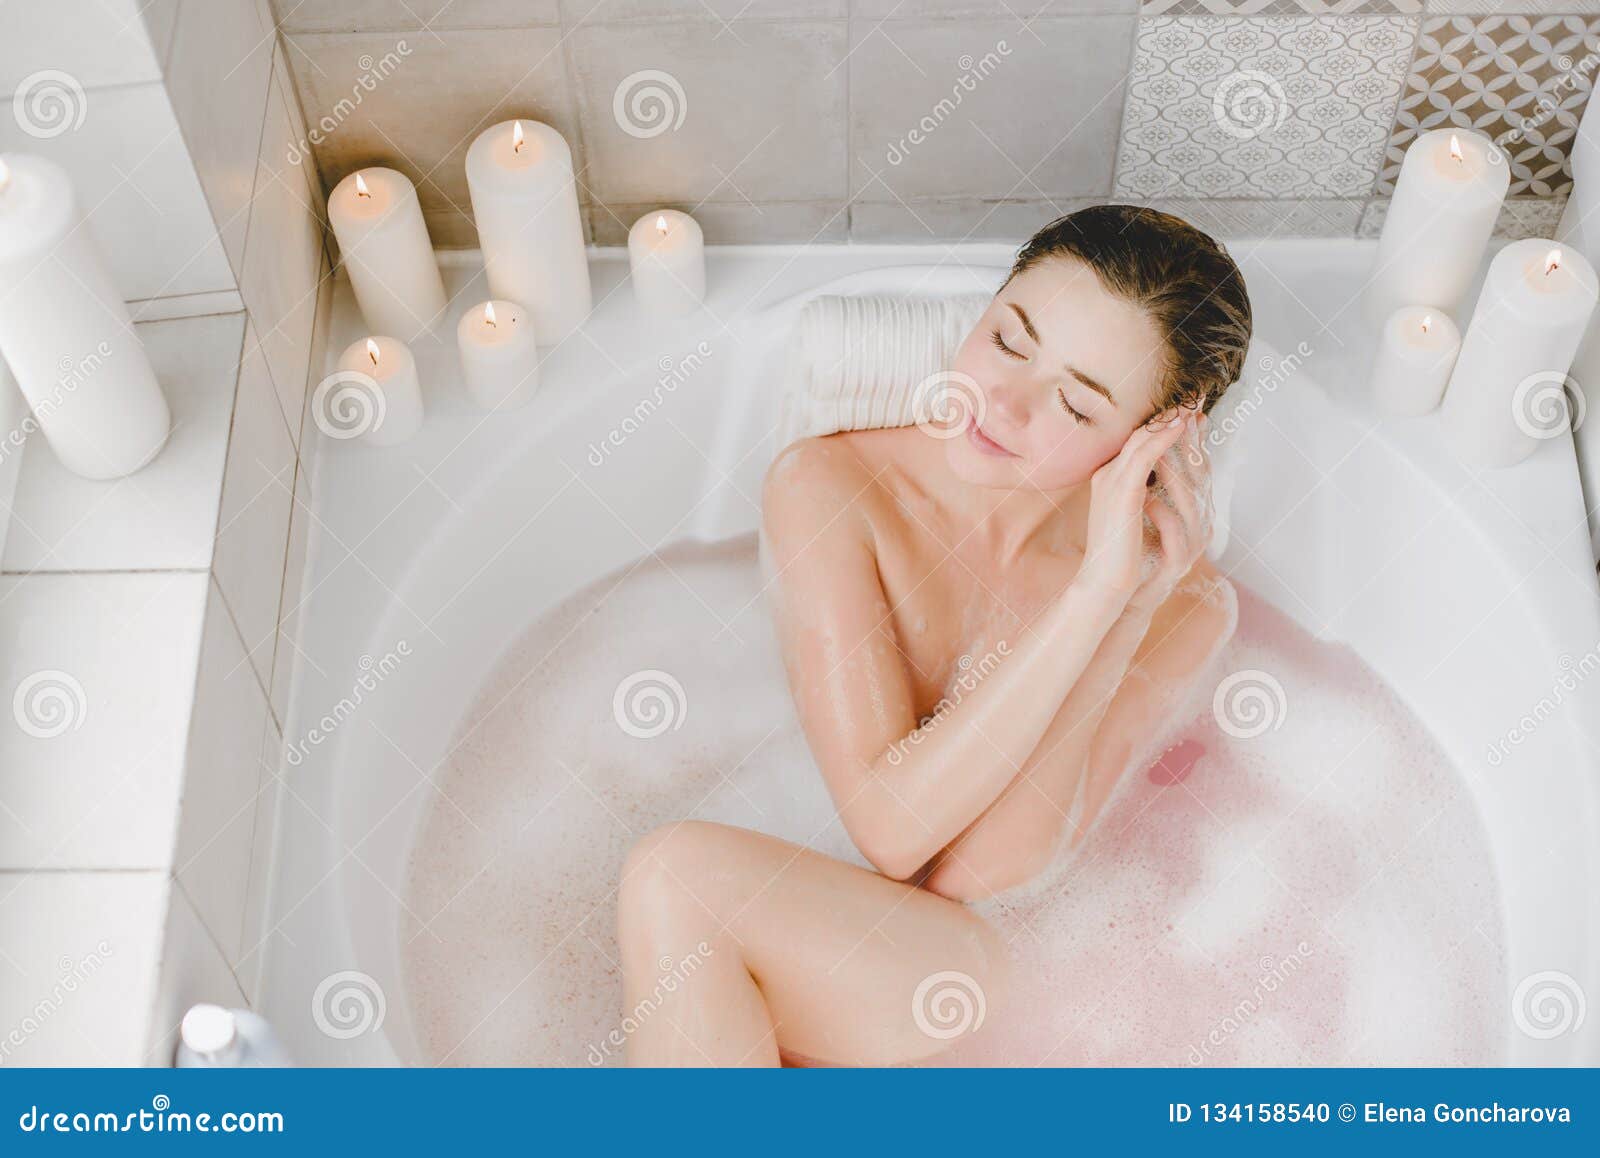 Bathtub Nude